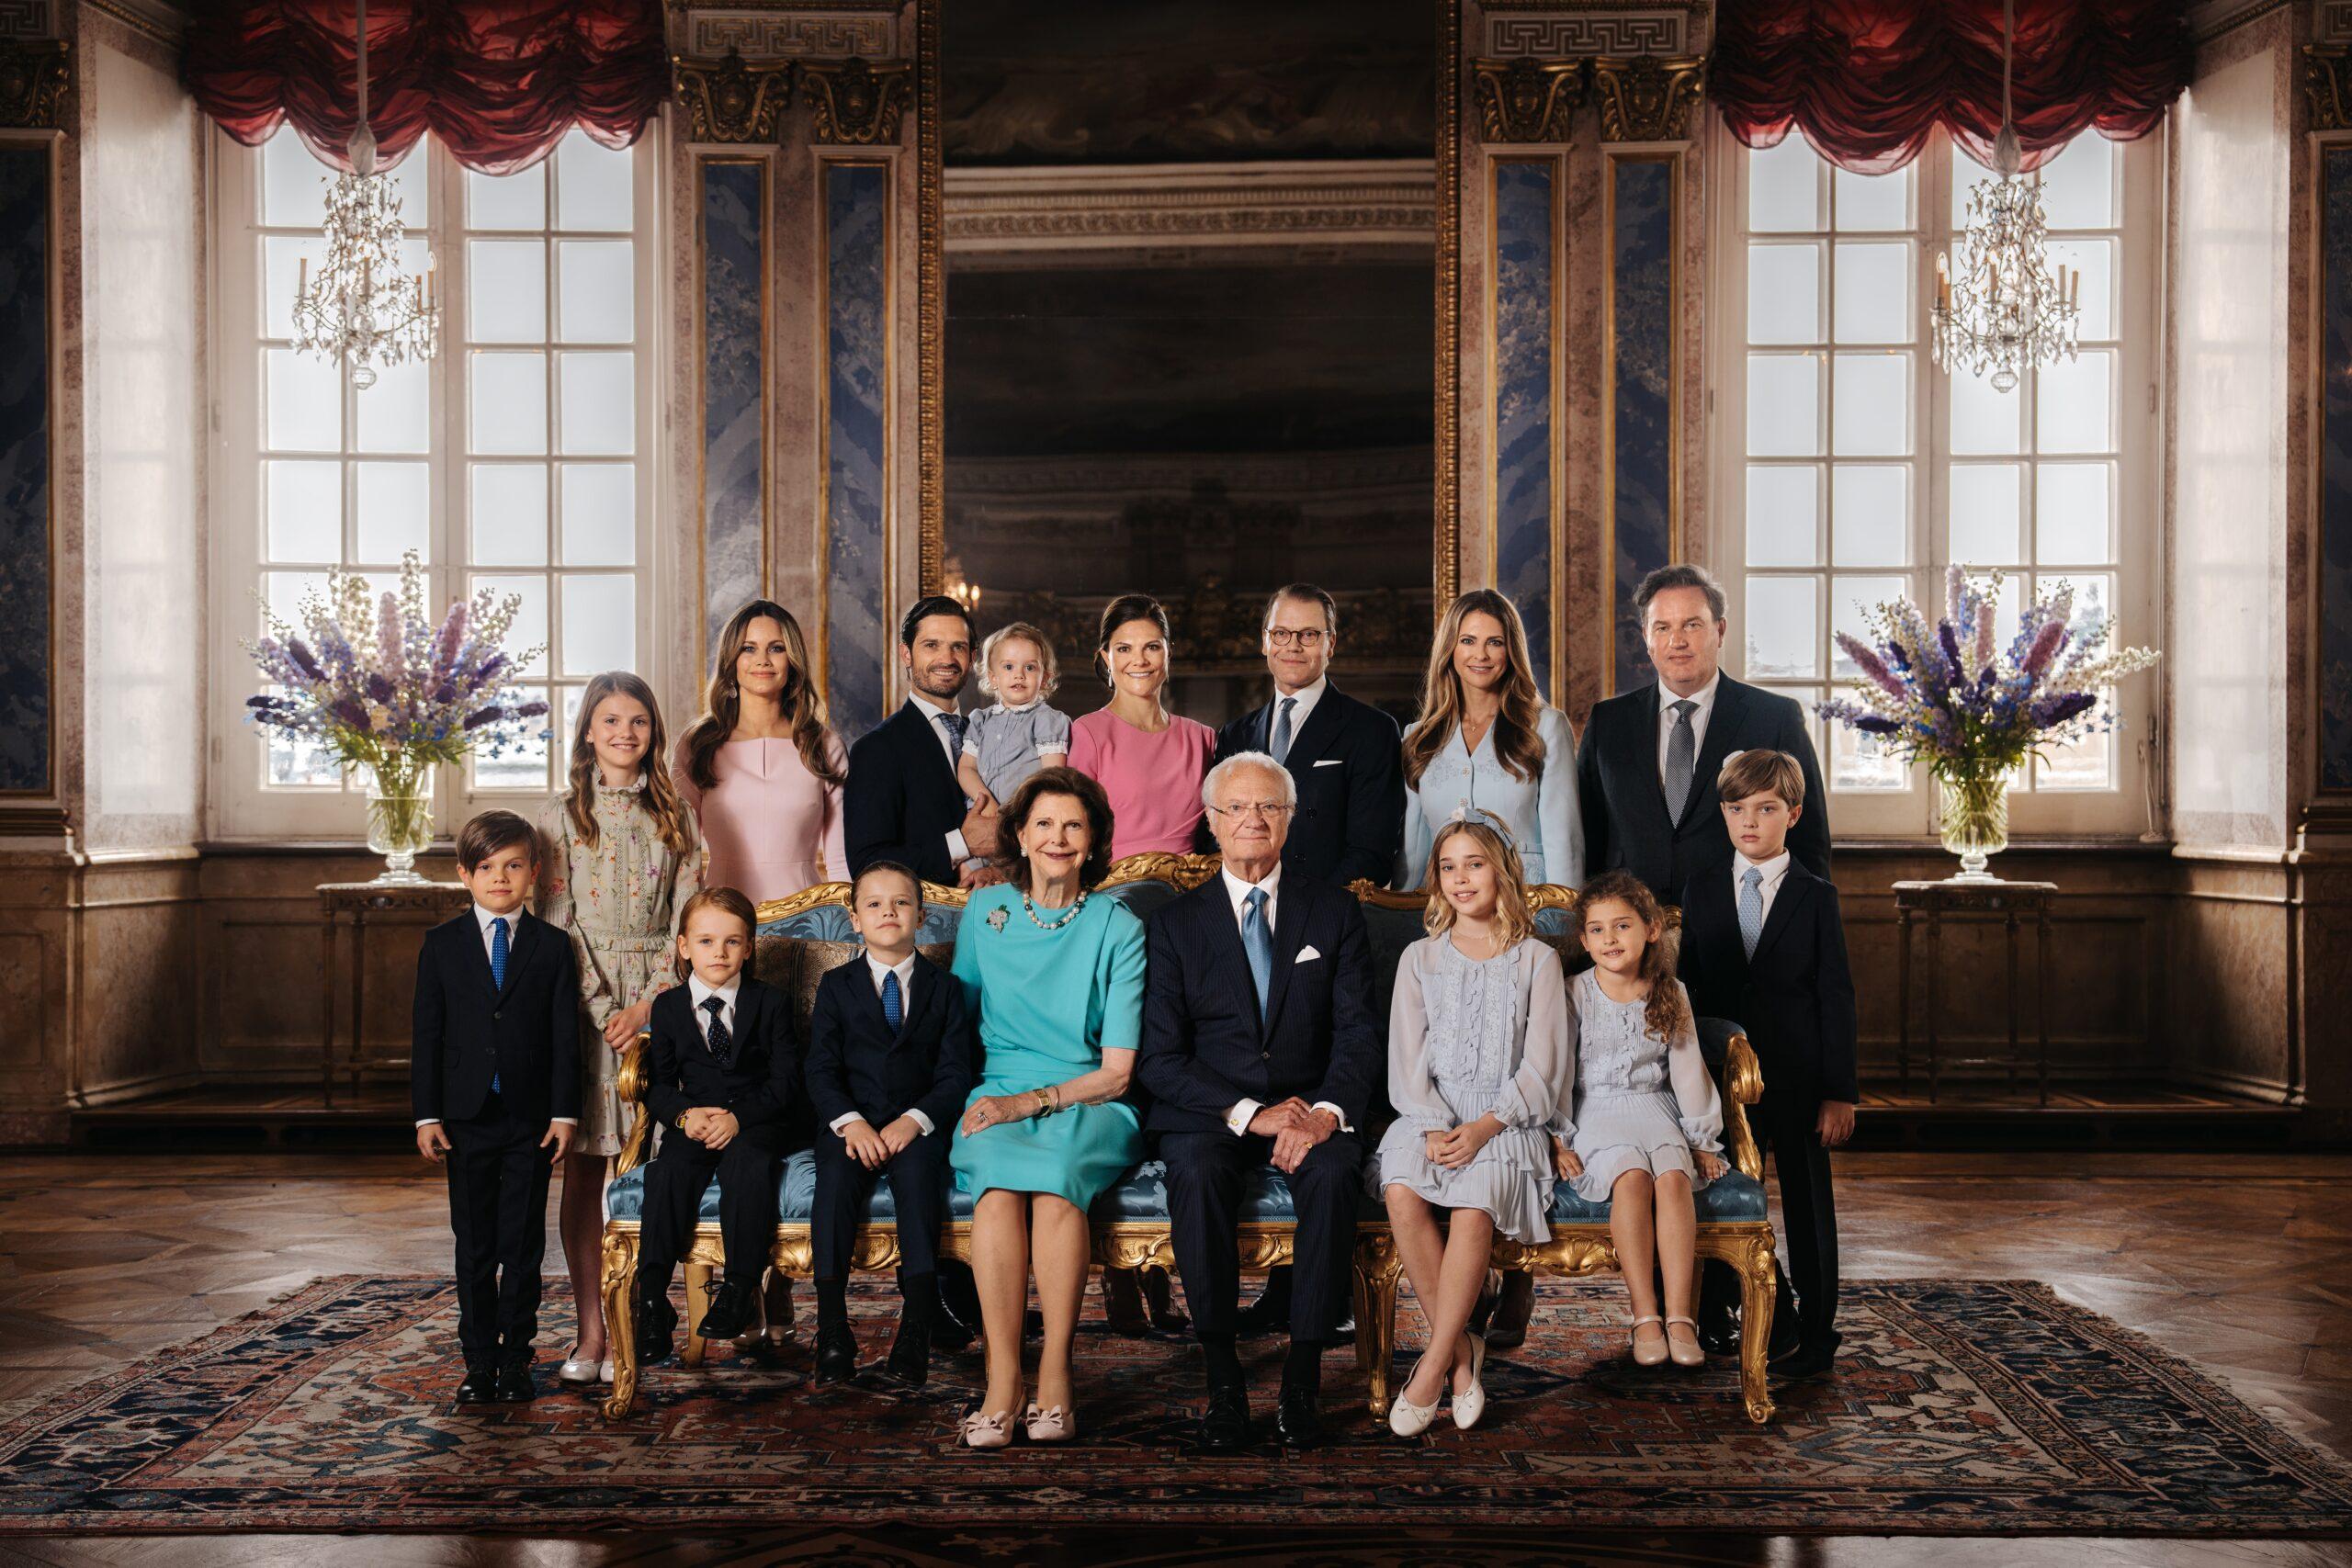 الملك كارل السادس عشر غوستاف محاطًا بأفراد العائلة المالكة. الصورة: Clément Morin/Royal Court of Sweden.